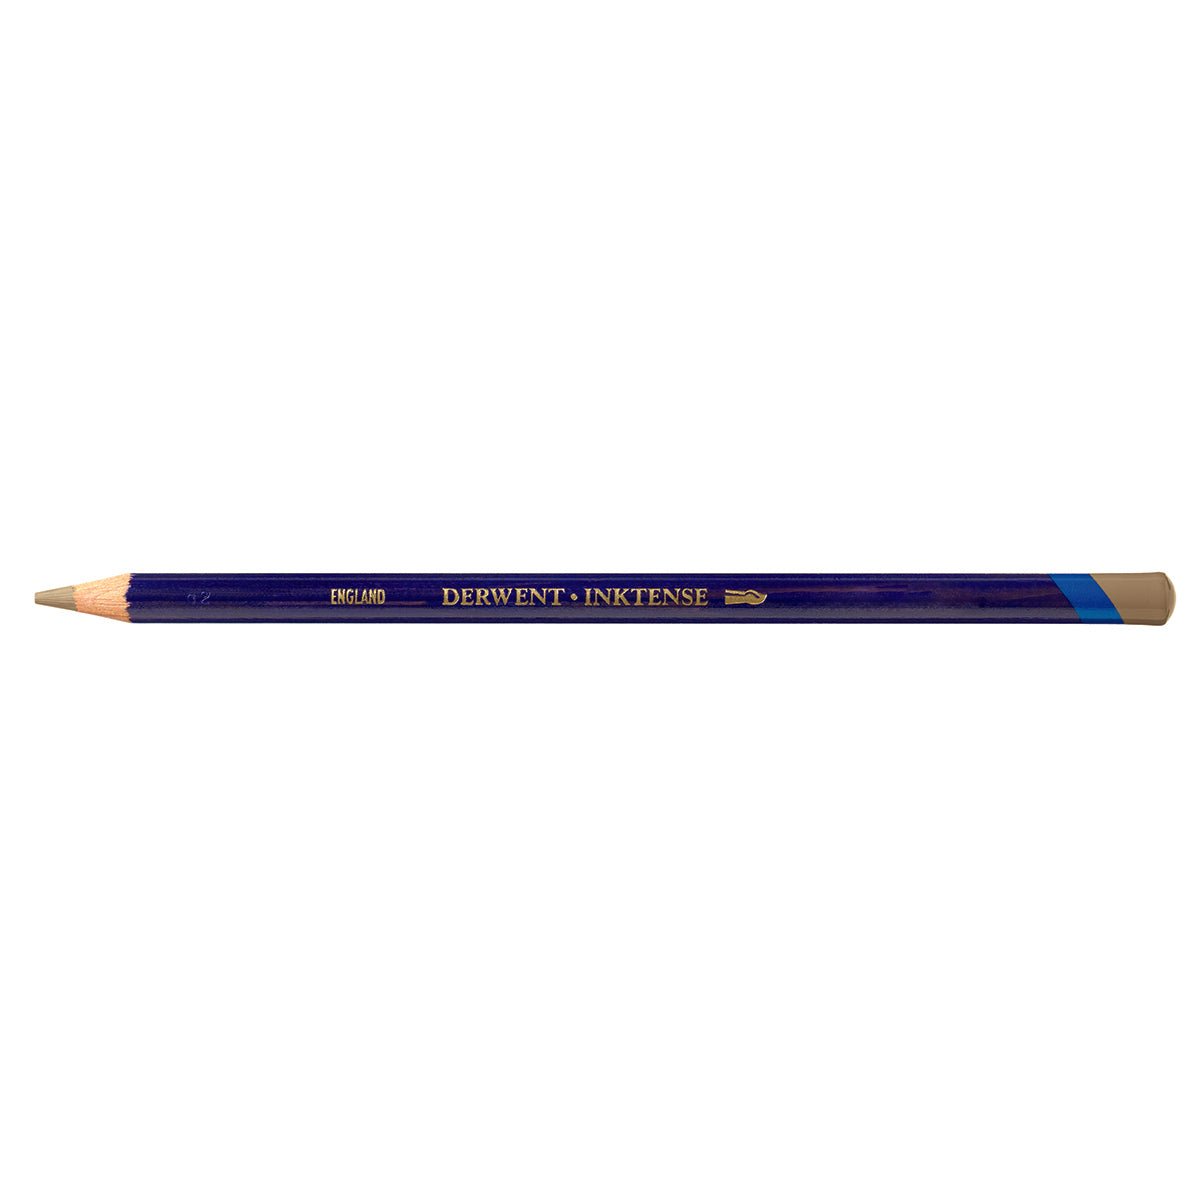 Derwent Inktense Pencil 1710 Amber - theartshop.com.au